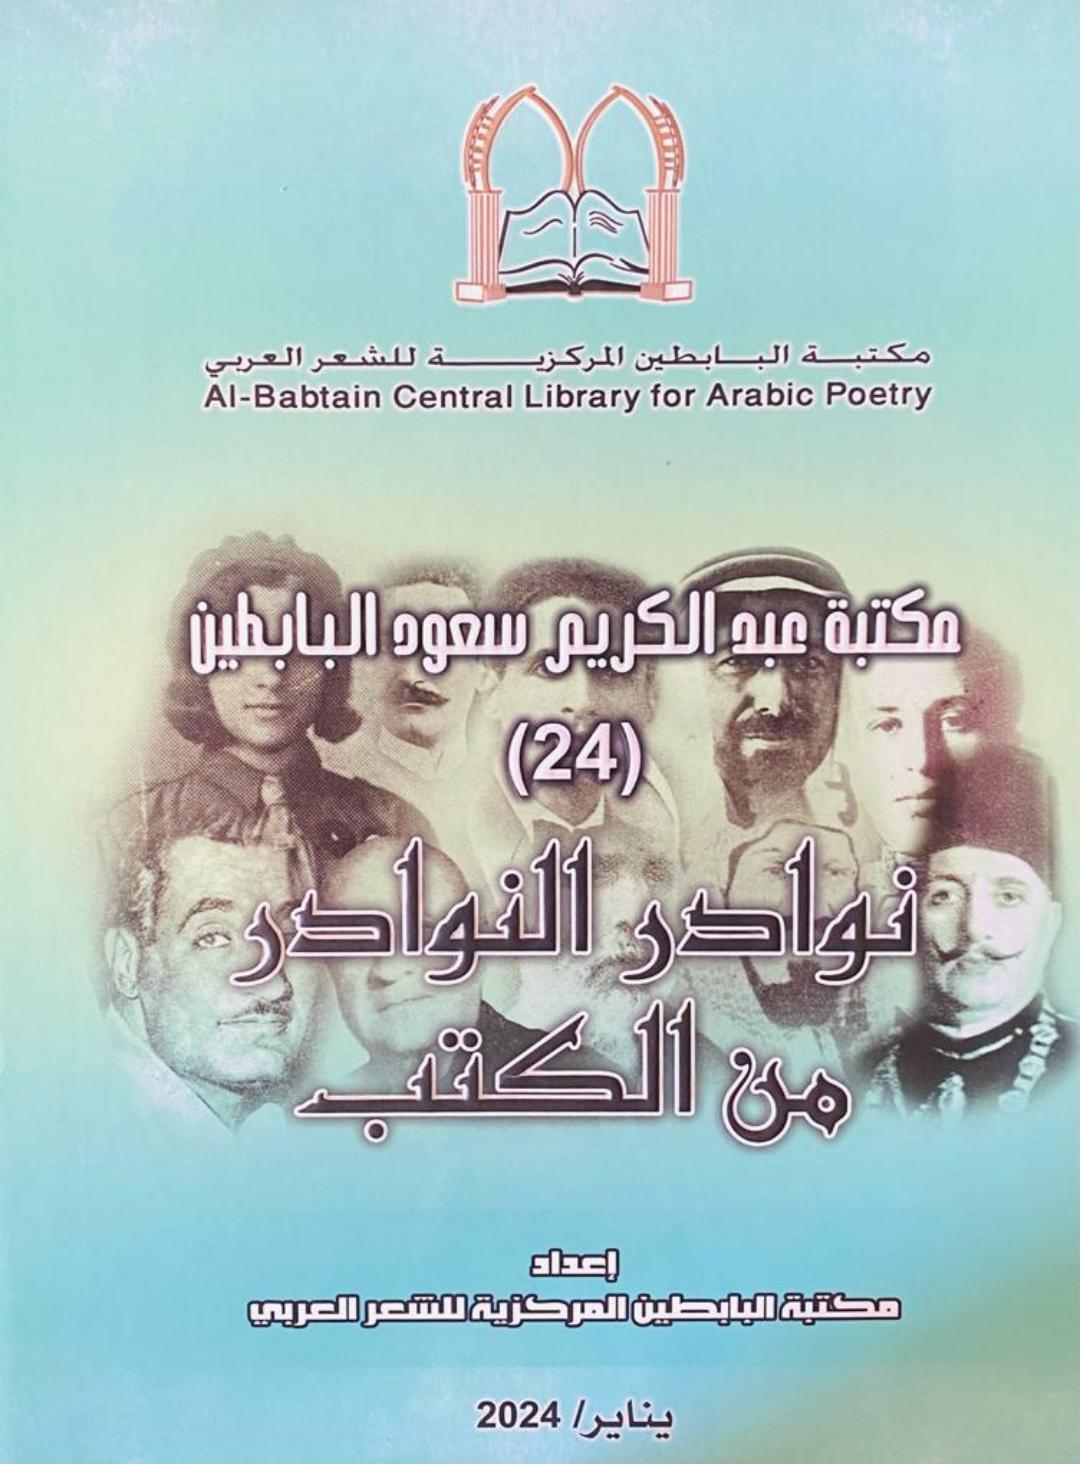 نوادر النوادر من الكتب في مكتبة عبدالكريم سعود البابطين